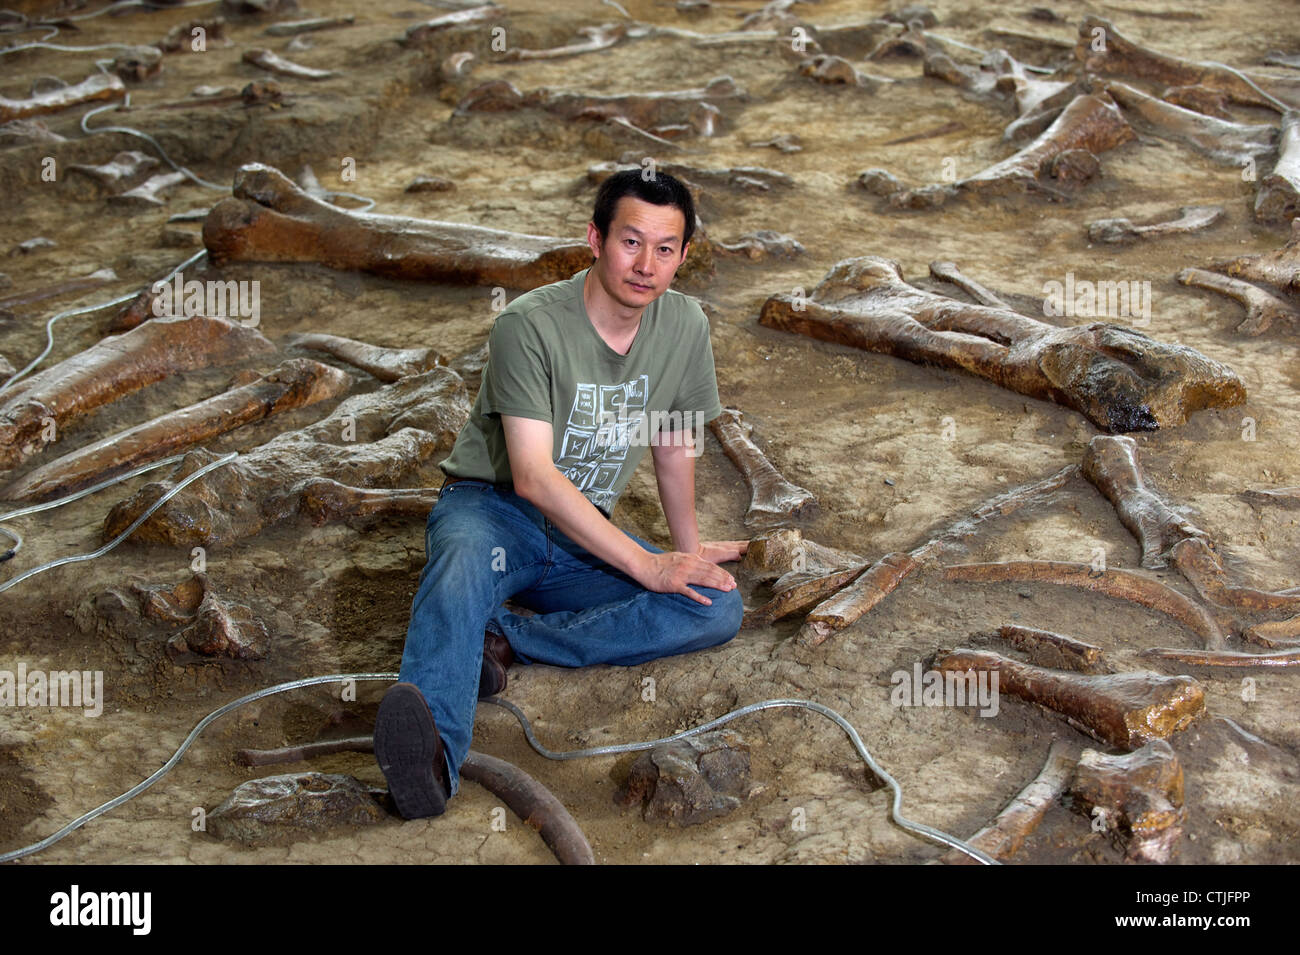 Paleontologo cinese il dott. Xu Xing pone tra i resti di anatra fatturati dinosauri in Zhucheng, Shandong, Cina. 06-giu-2012 Foto Stock